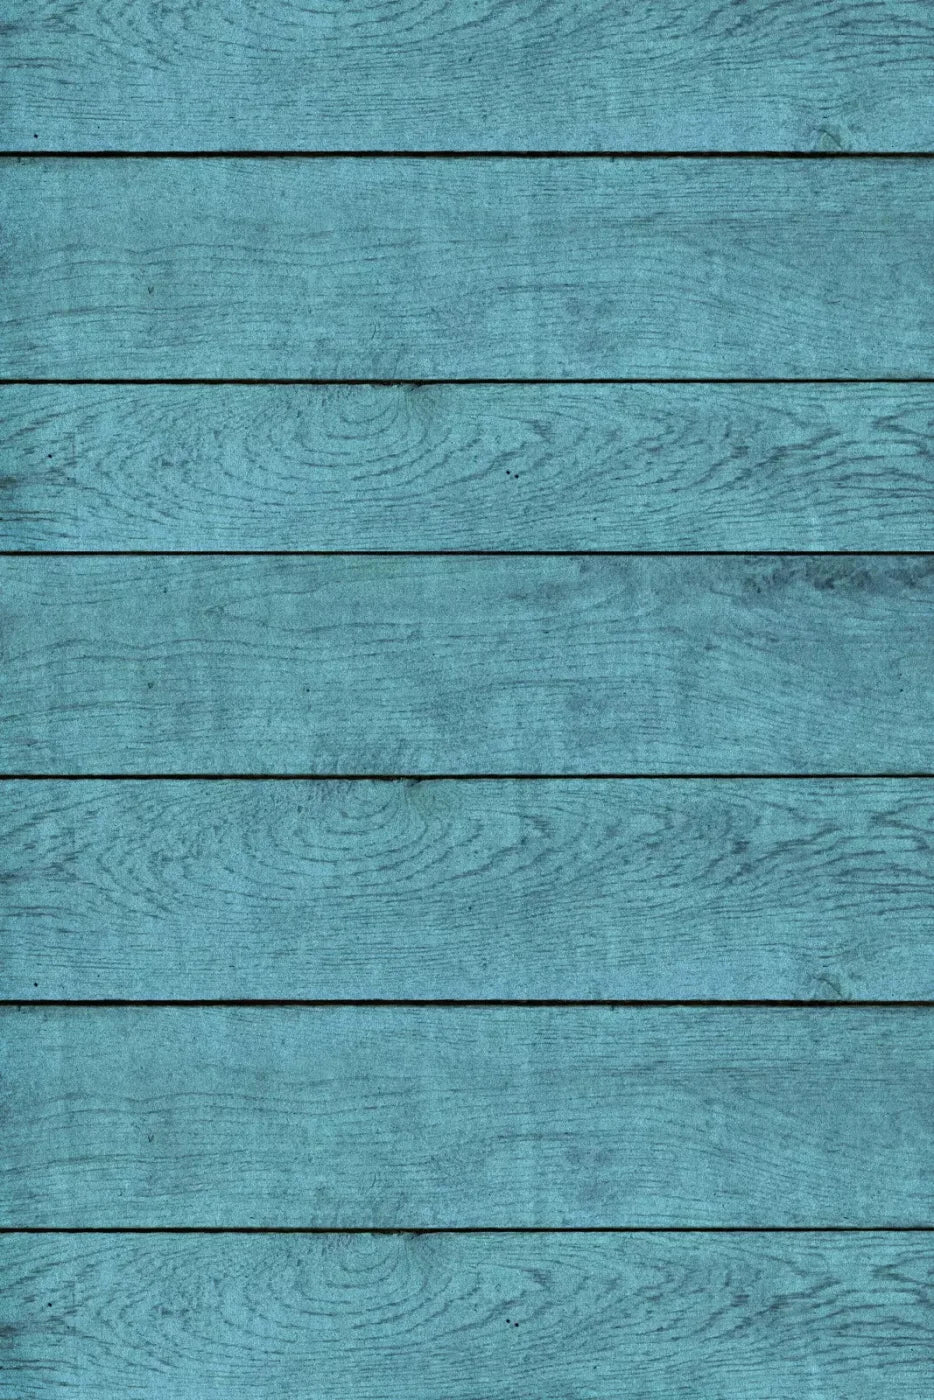 Boarded Blue 4X5 Rubbermat Floor ( 48 X 60 Inch ) Backdrop